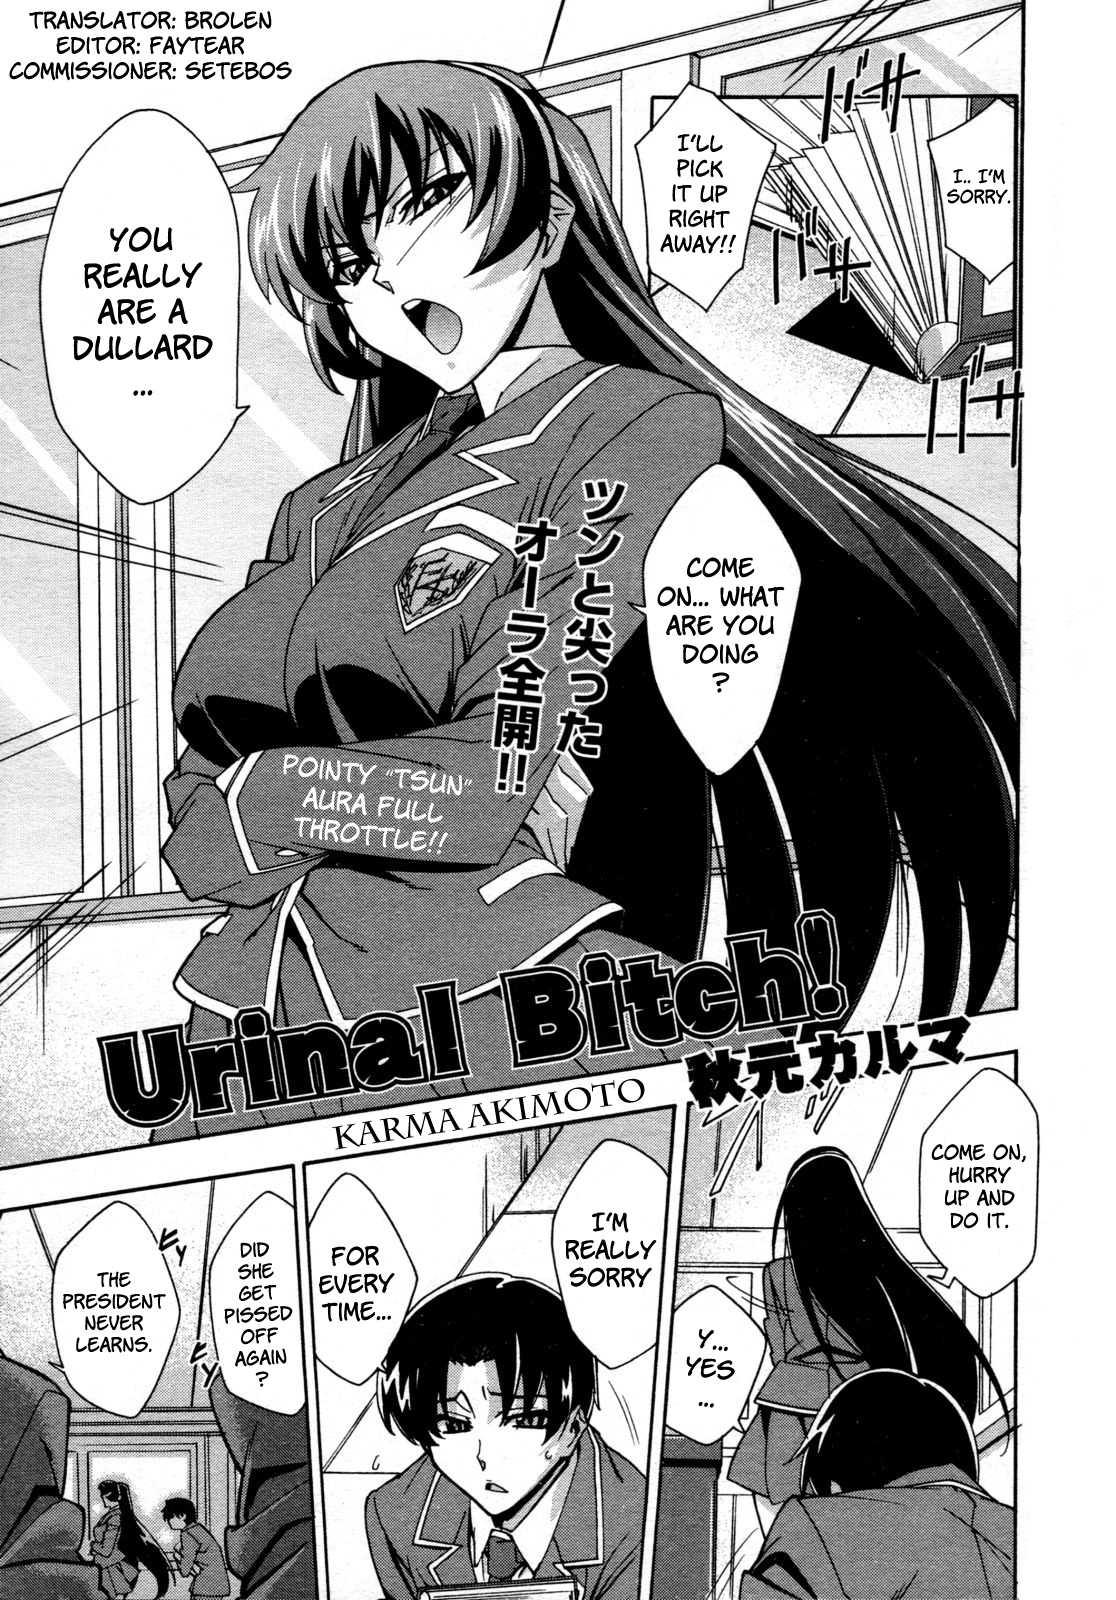 [Karma Akimoto] Urinal Bitch (English) 